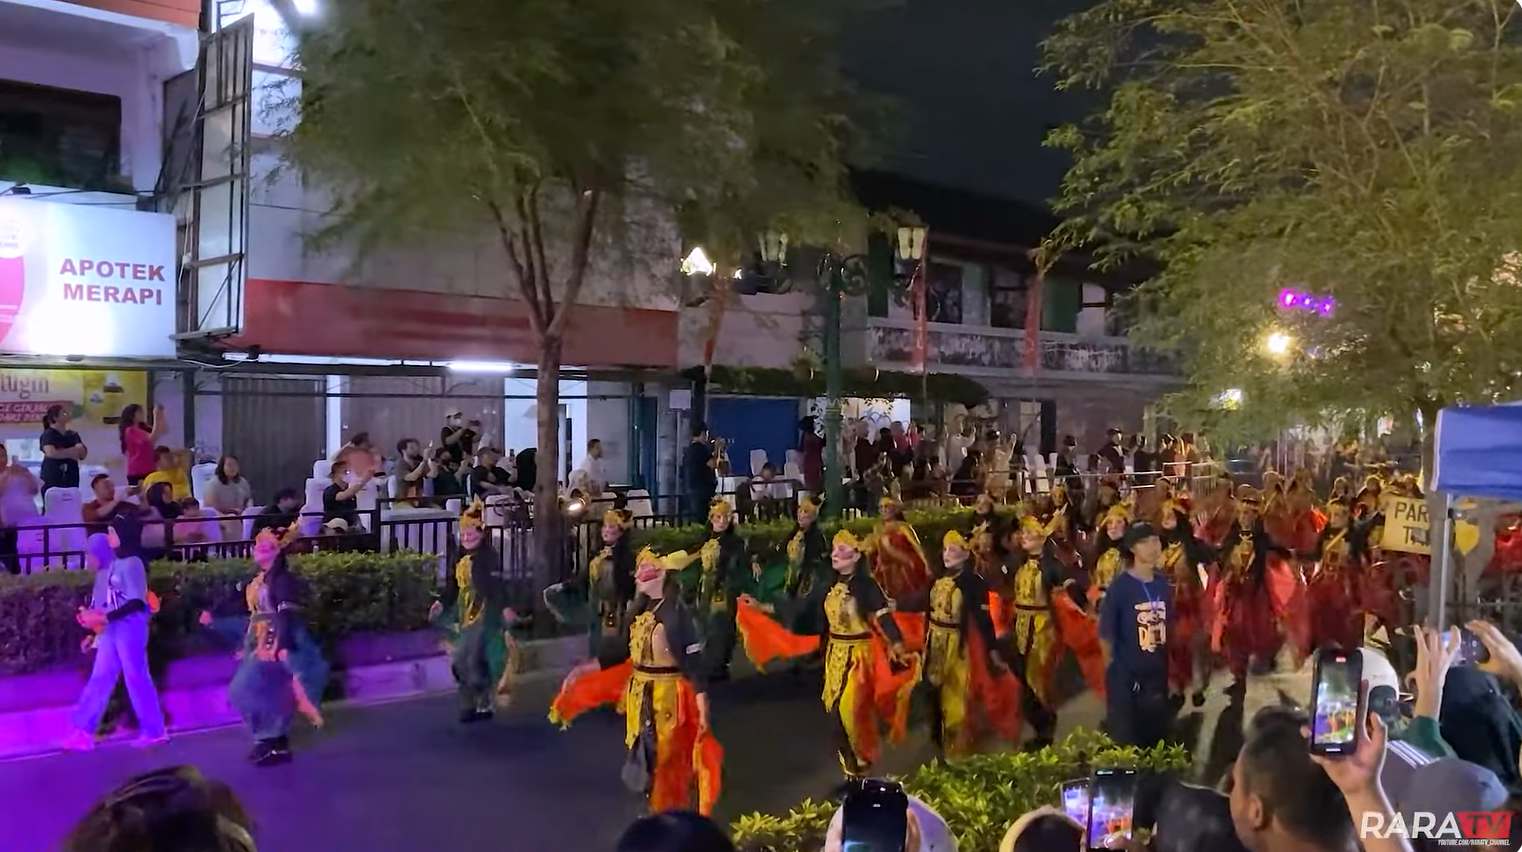 rara TV Pesta Spektakuler Wayang Jogja Night Carnival #8 Mengenang HUT ke-267 Kota Yogyakarta